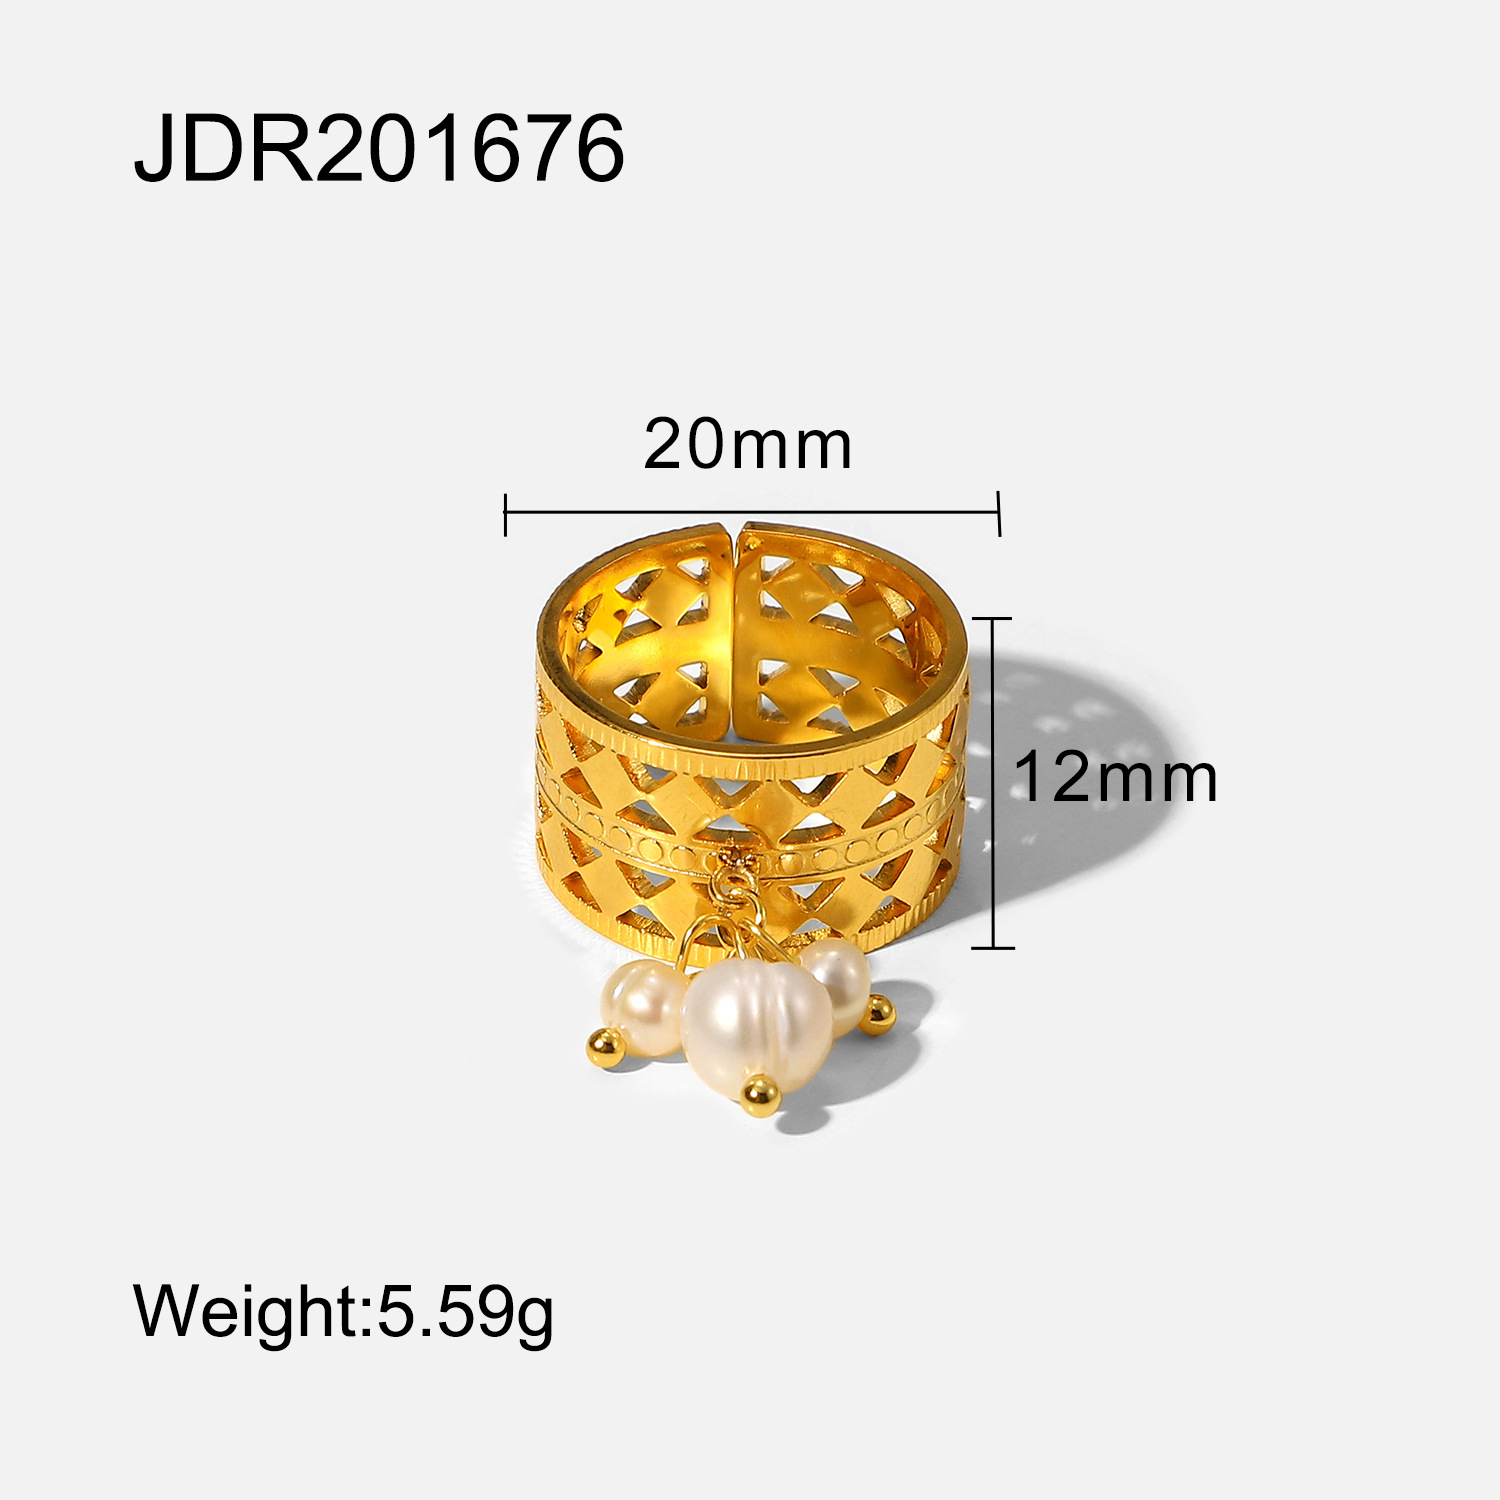 3:JDR201676